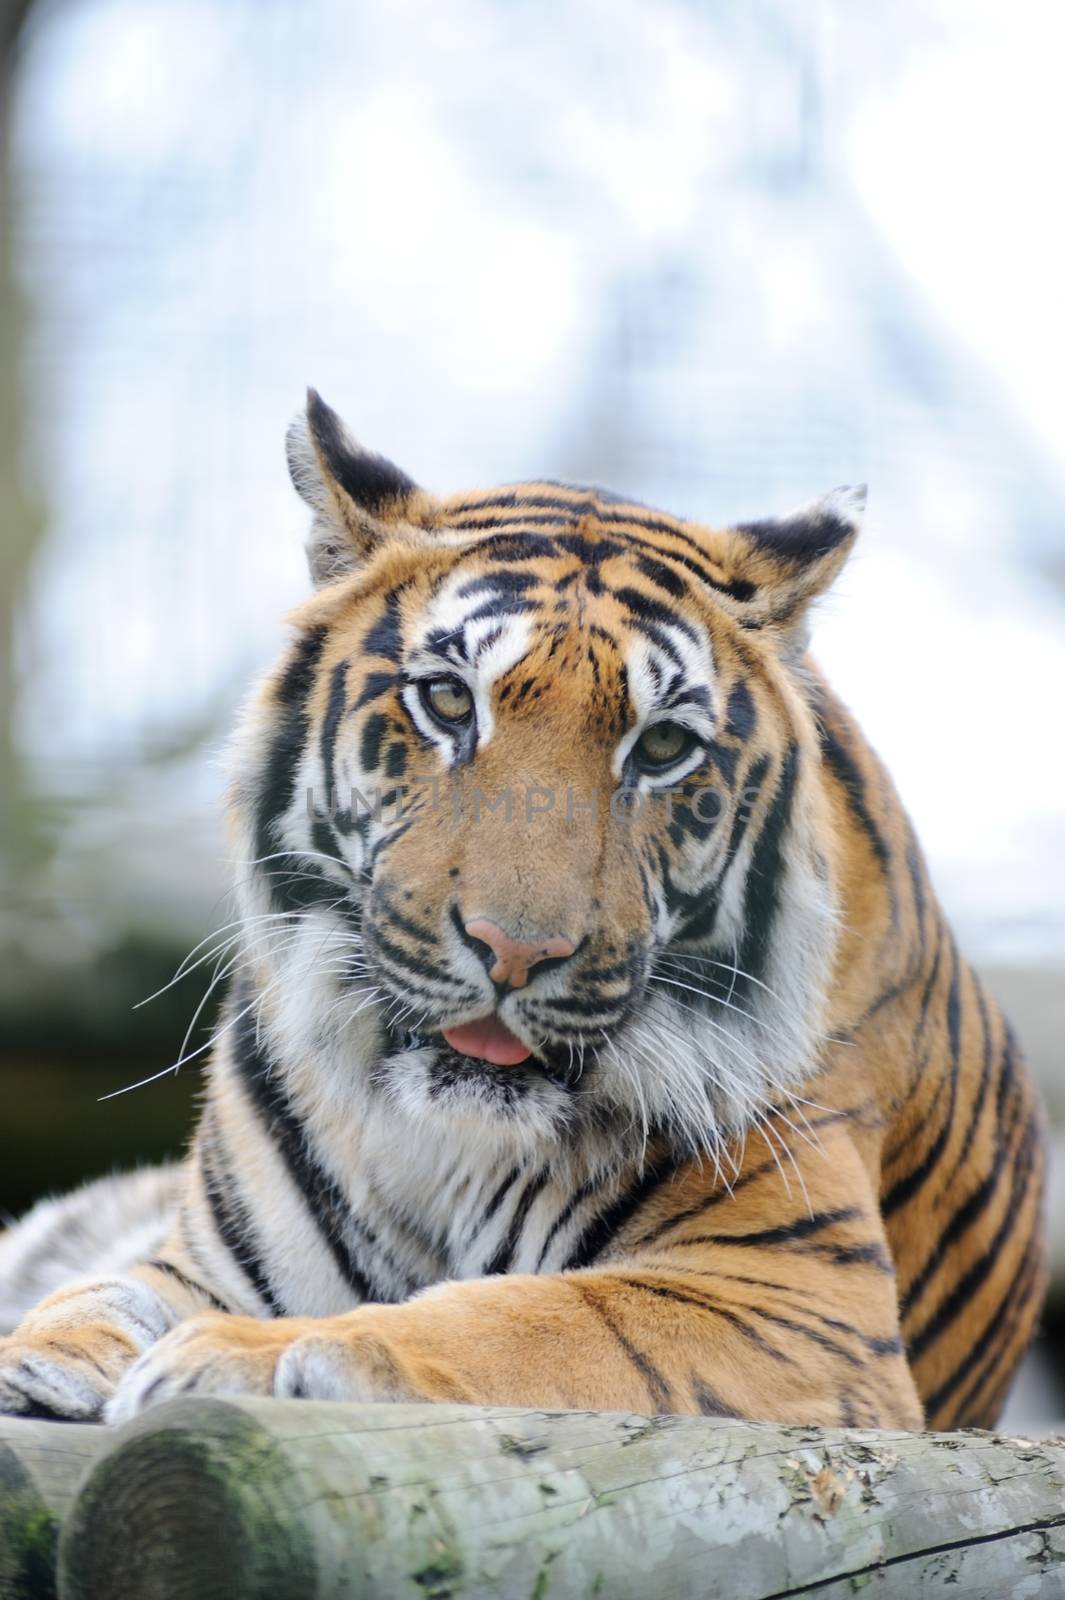 Tiger looks straight ahead